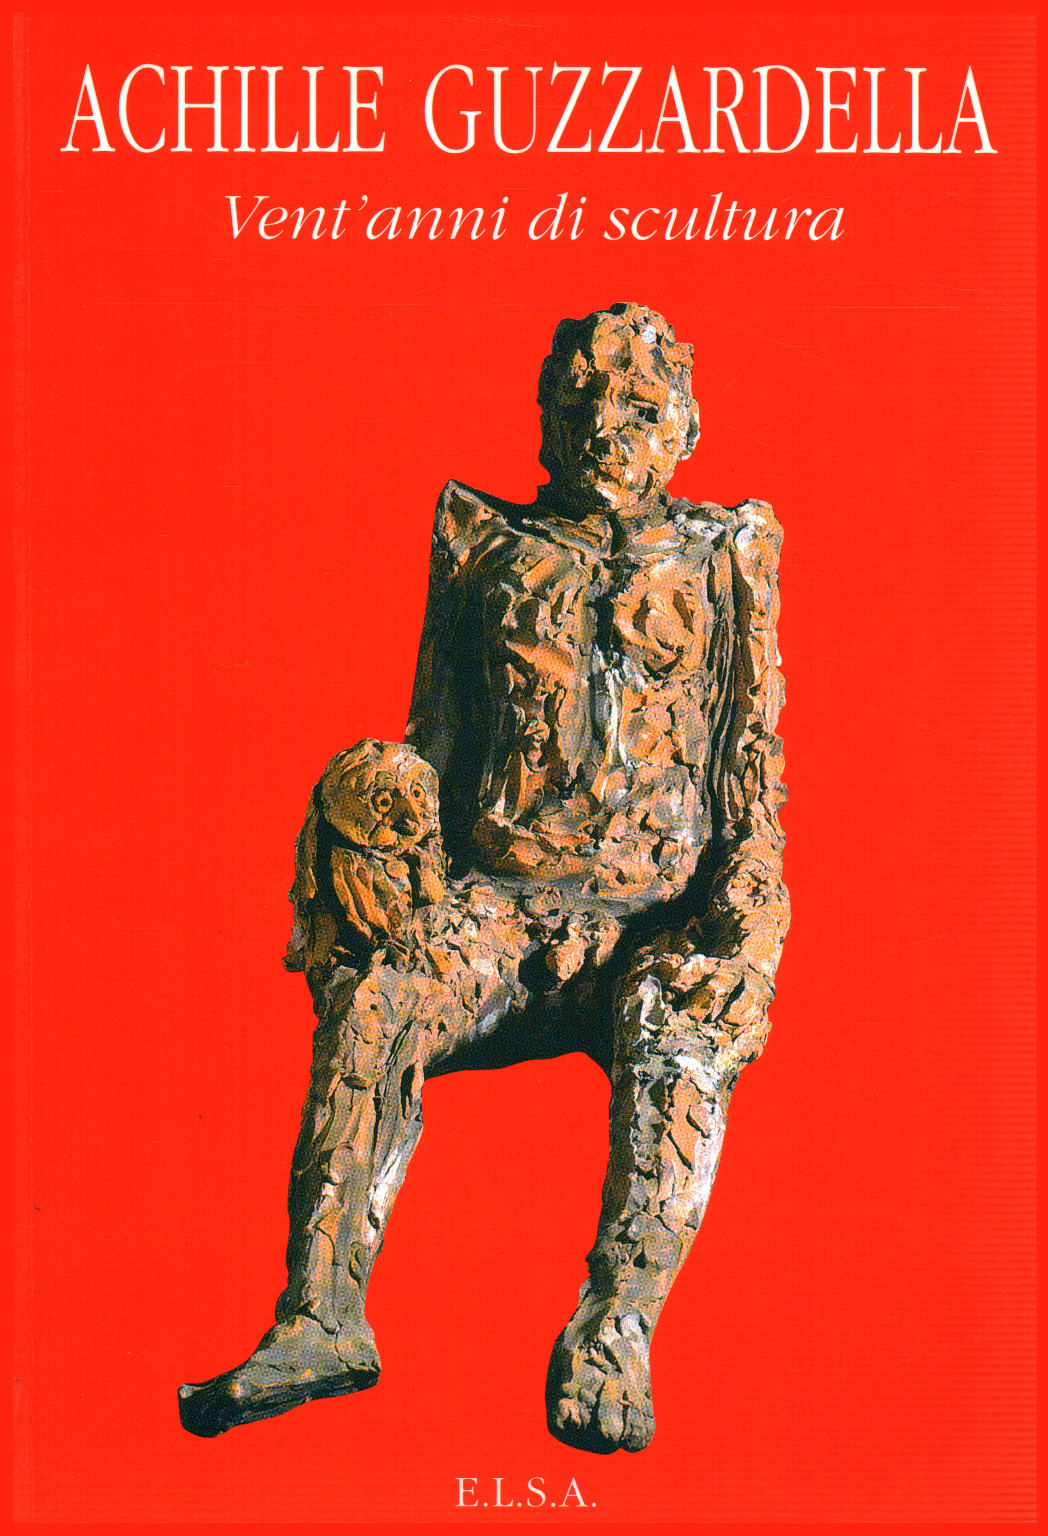 Achilles Guzzardella. Zwanzig jahre skulptur, s.zu.